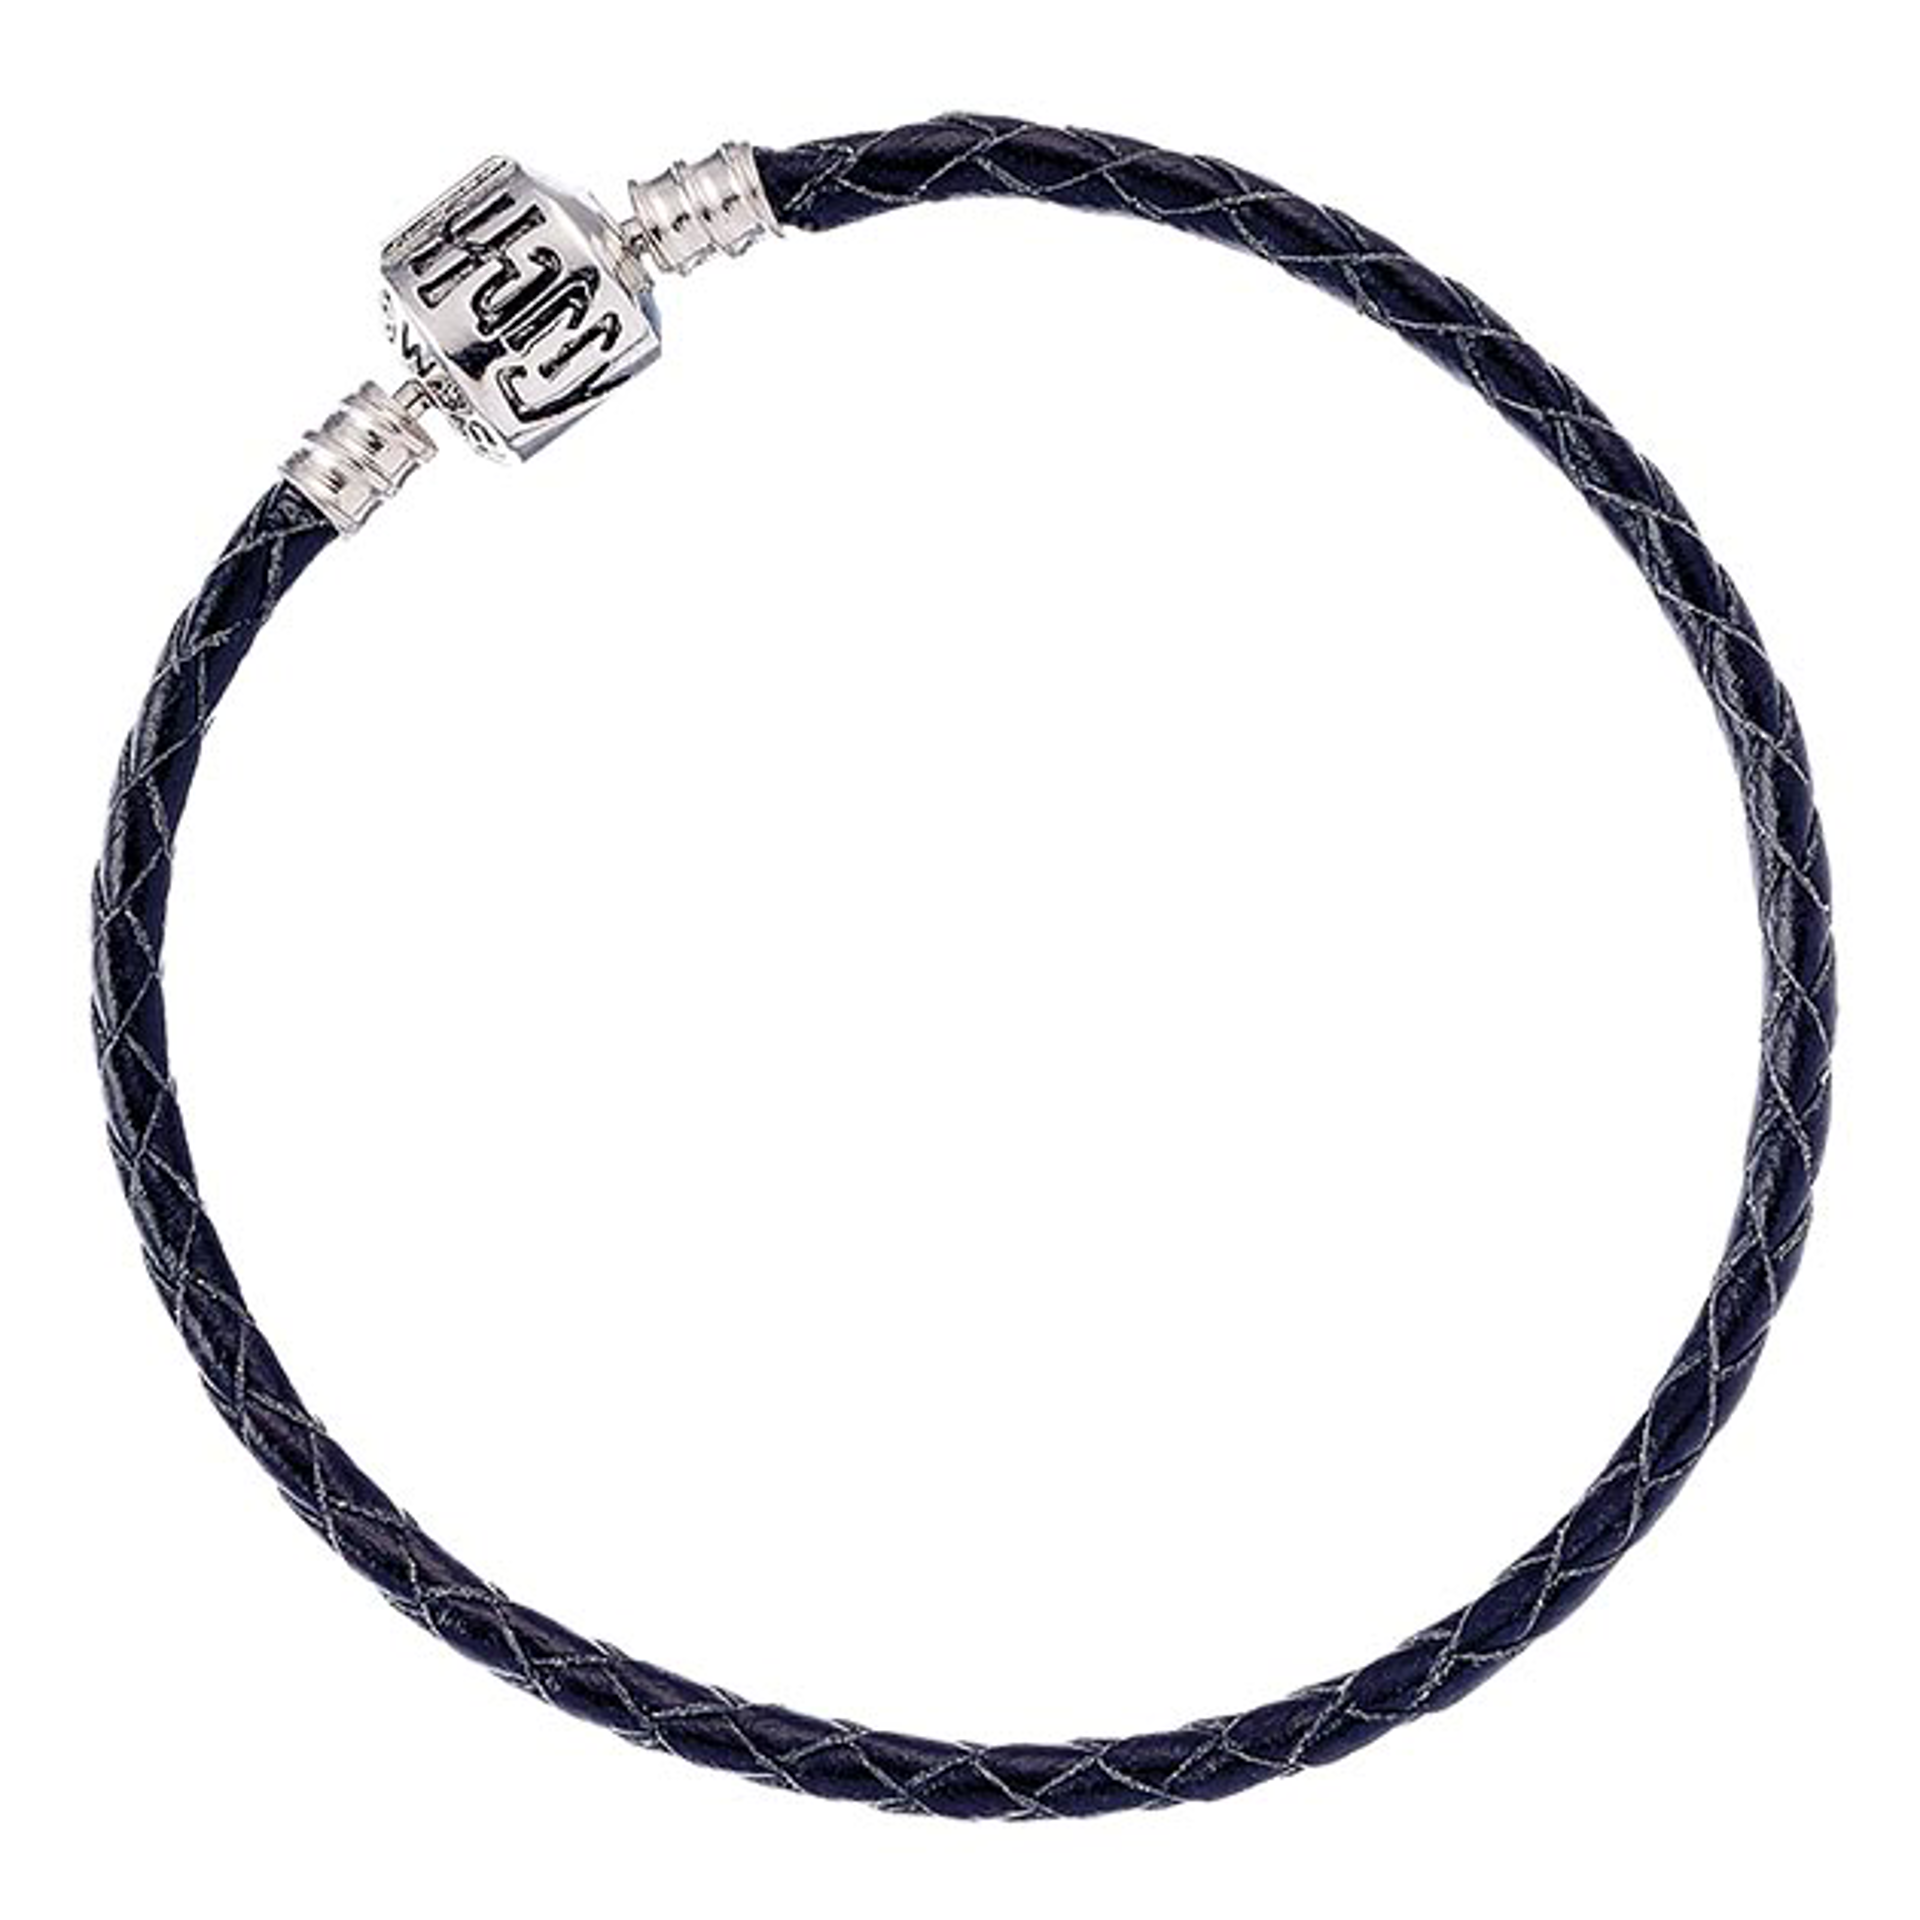 Harry Potter - Bracelet à breloques Charms en cuir noir 17cm